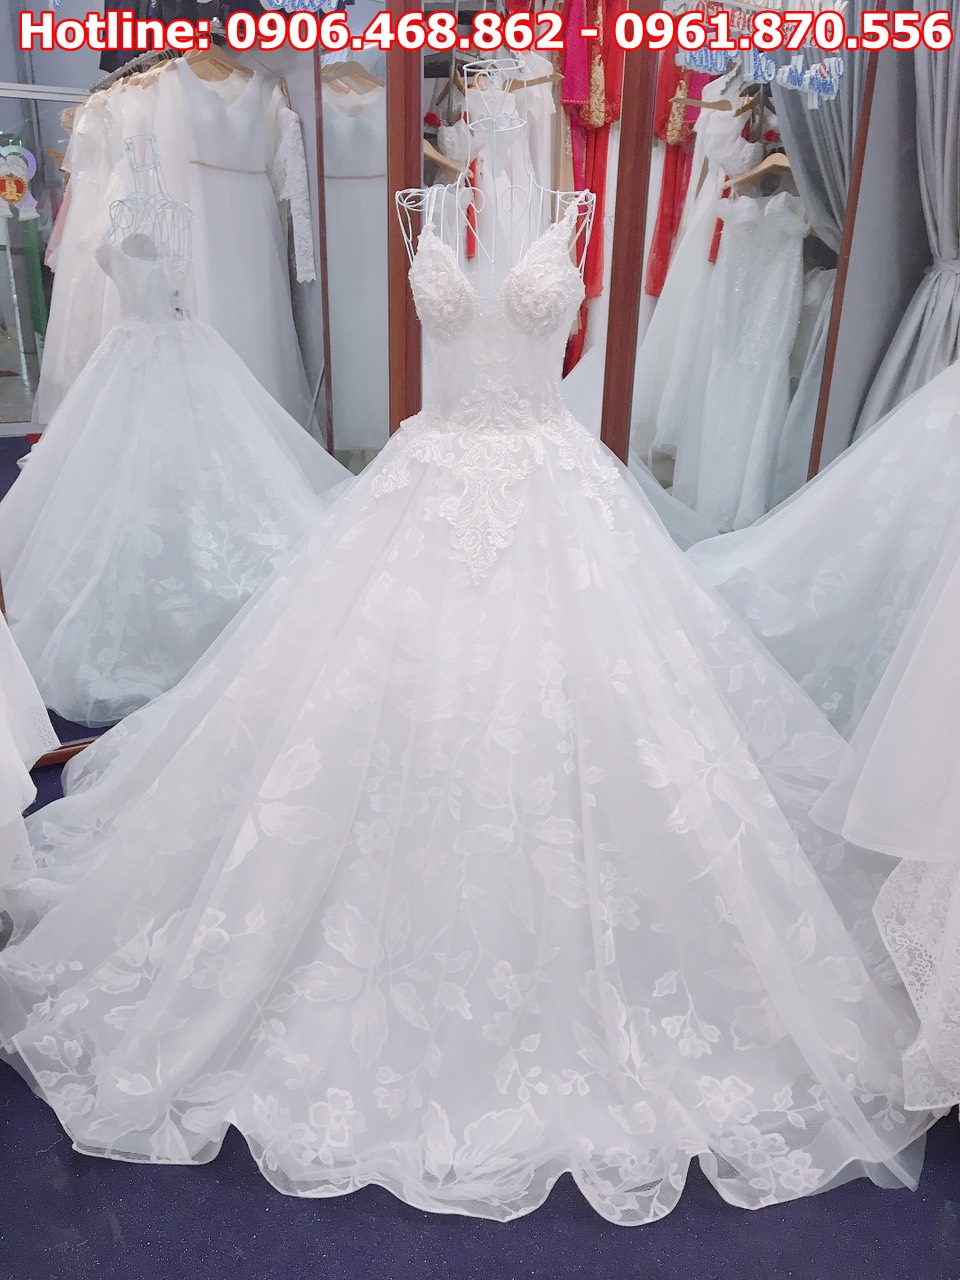 Những mẫu váy cưới đẹp lộng lẫy dành cho các nàng trong ngày trọng đại